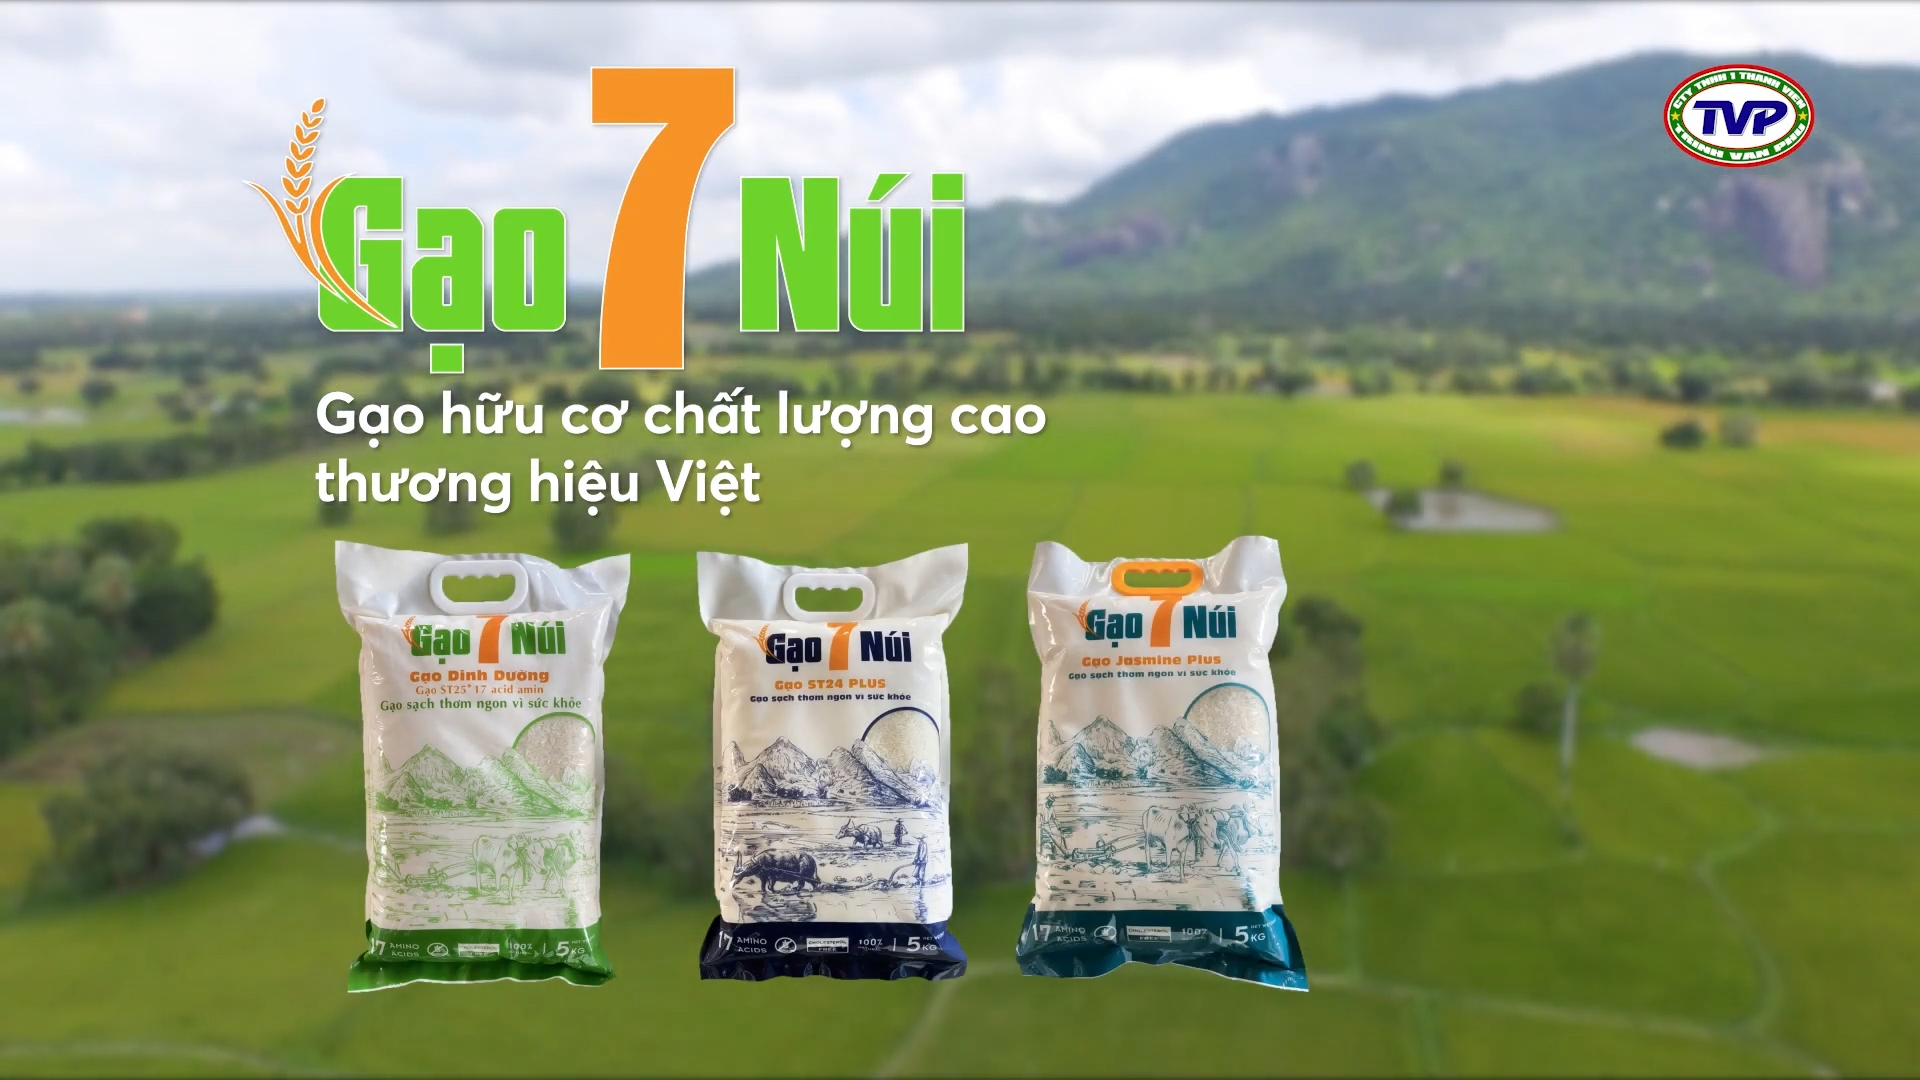 Gạo 7 Núi - Cty Trịnh Văn Phú